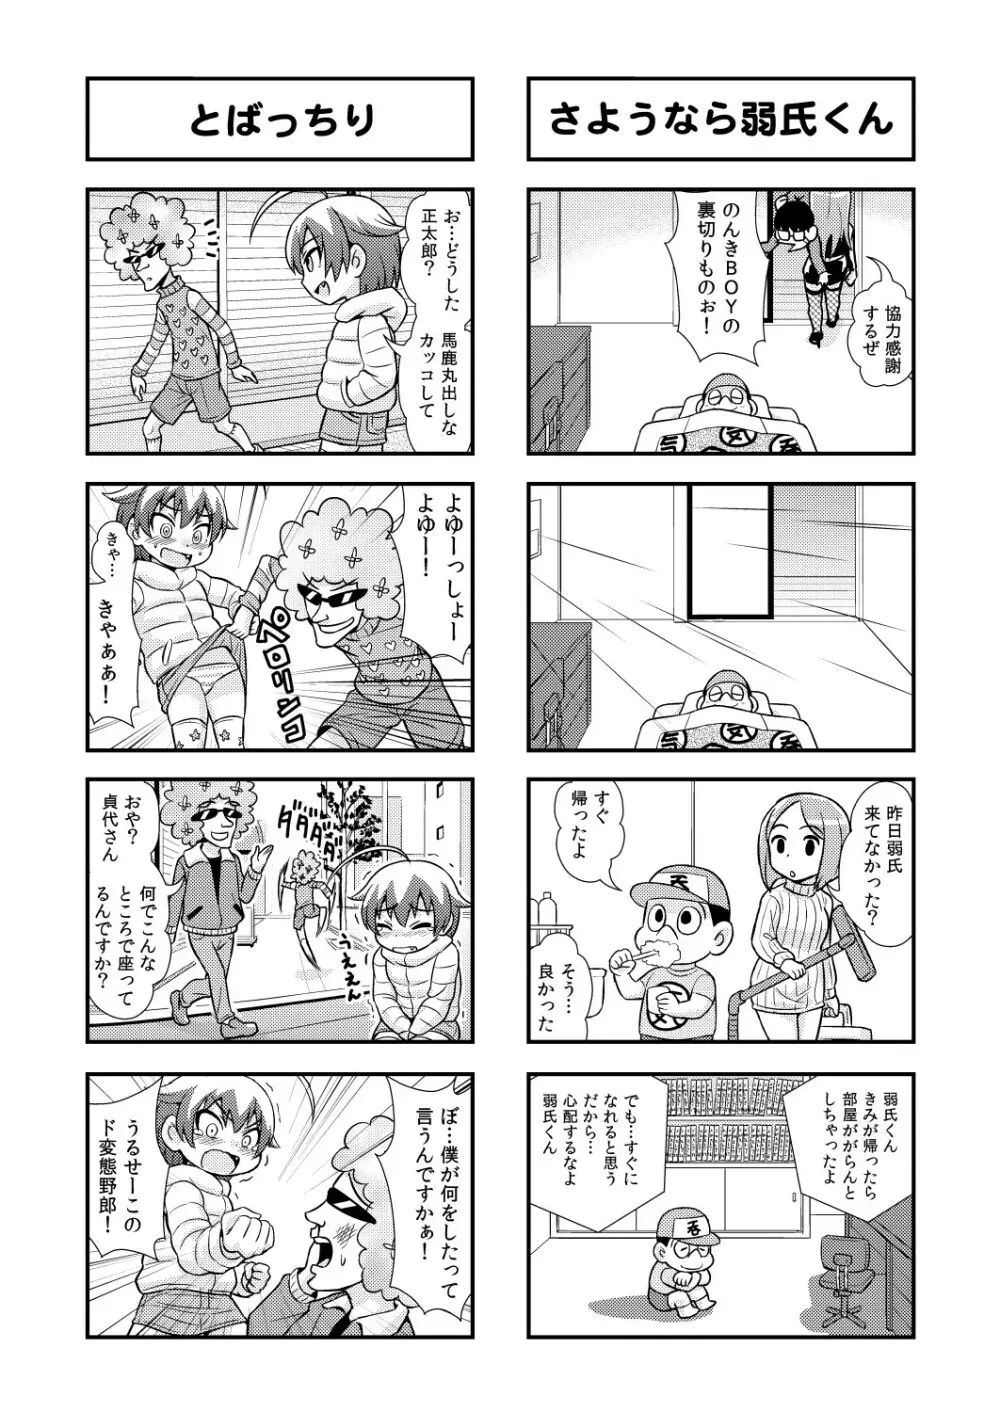 のんきBOY 1-38 50ページ